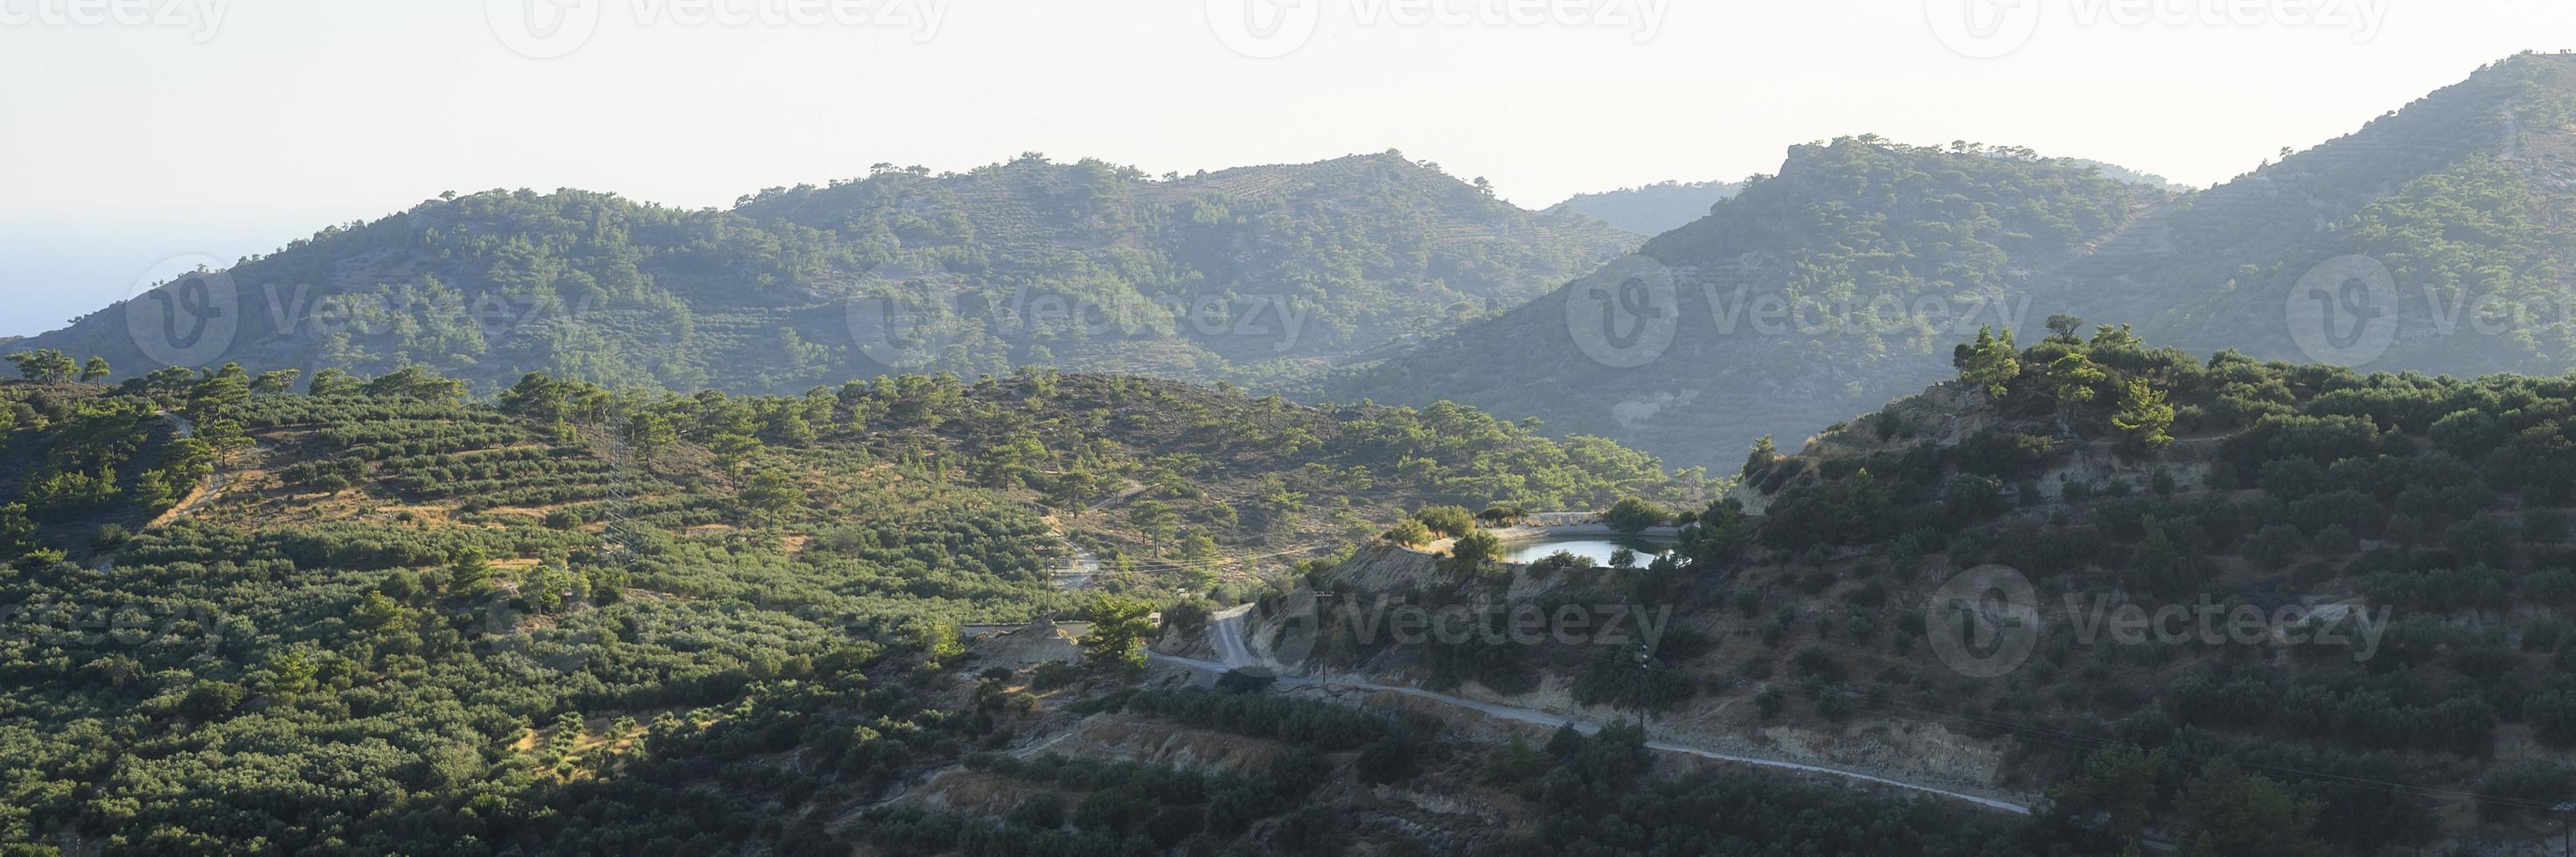 paesaggio di una zona montuosa con piantagioni di ulivi foto